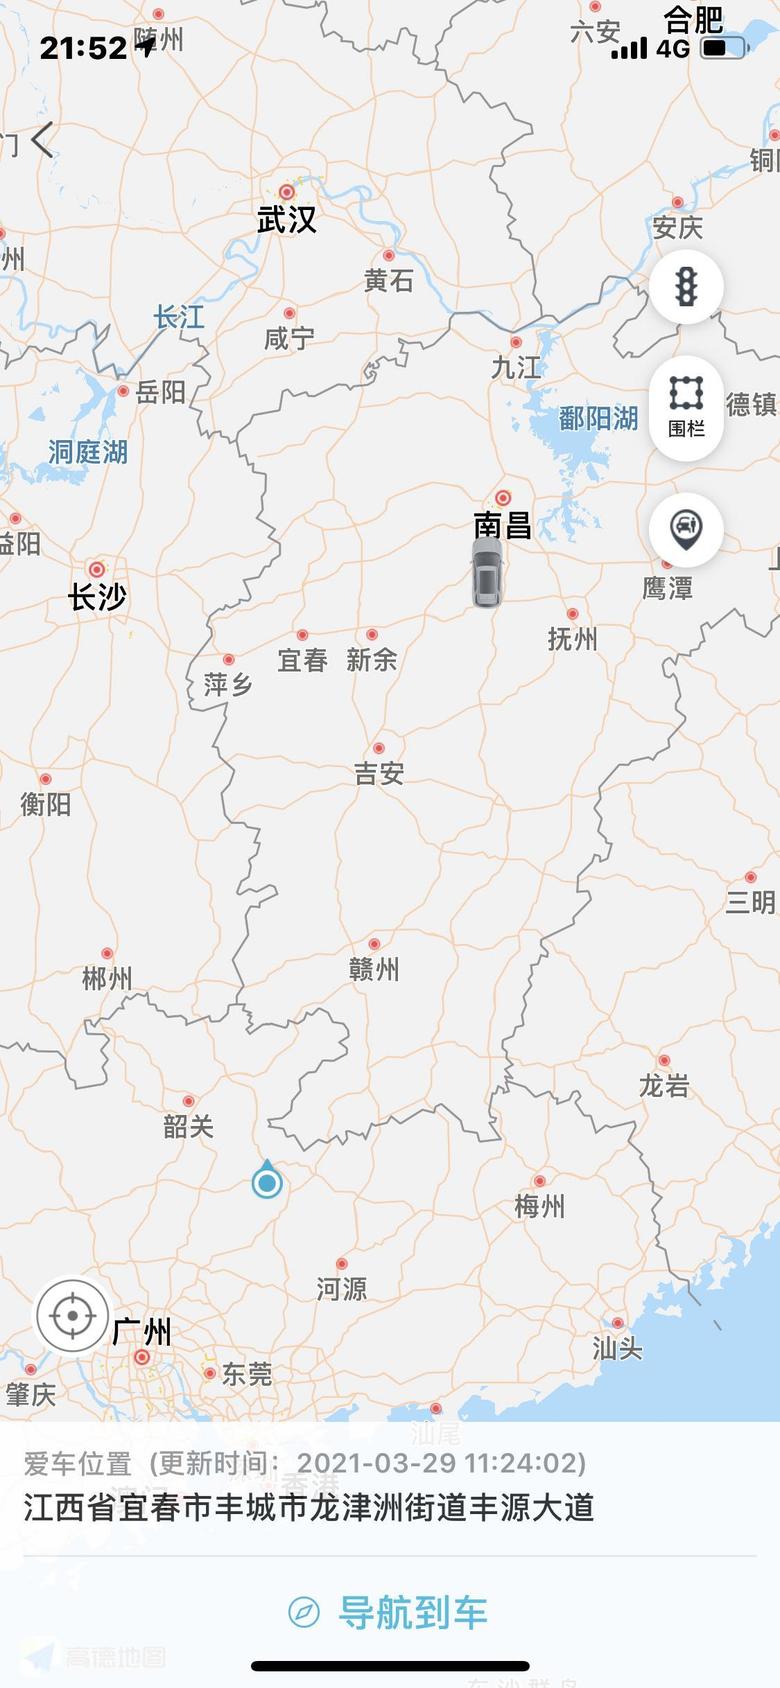 逸动 出厂日期是4.22，为啥这个3.29就有了而且定位在江西，生产地应该在重庆的呀，有车友解答一下吗